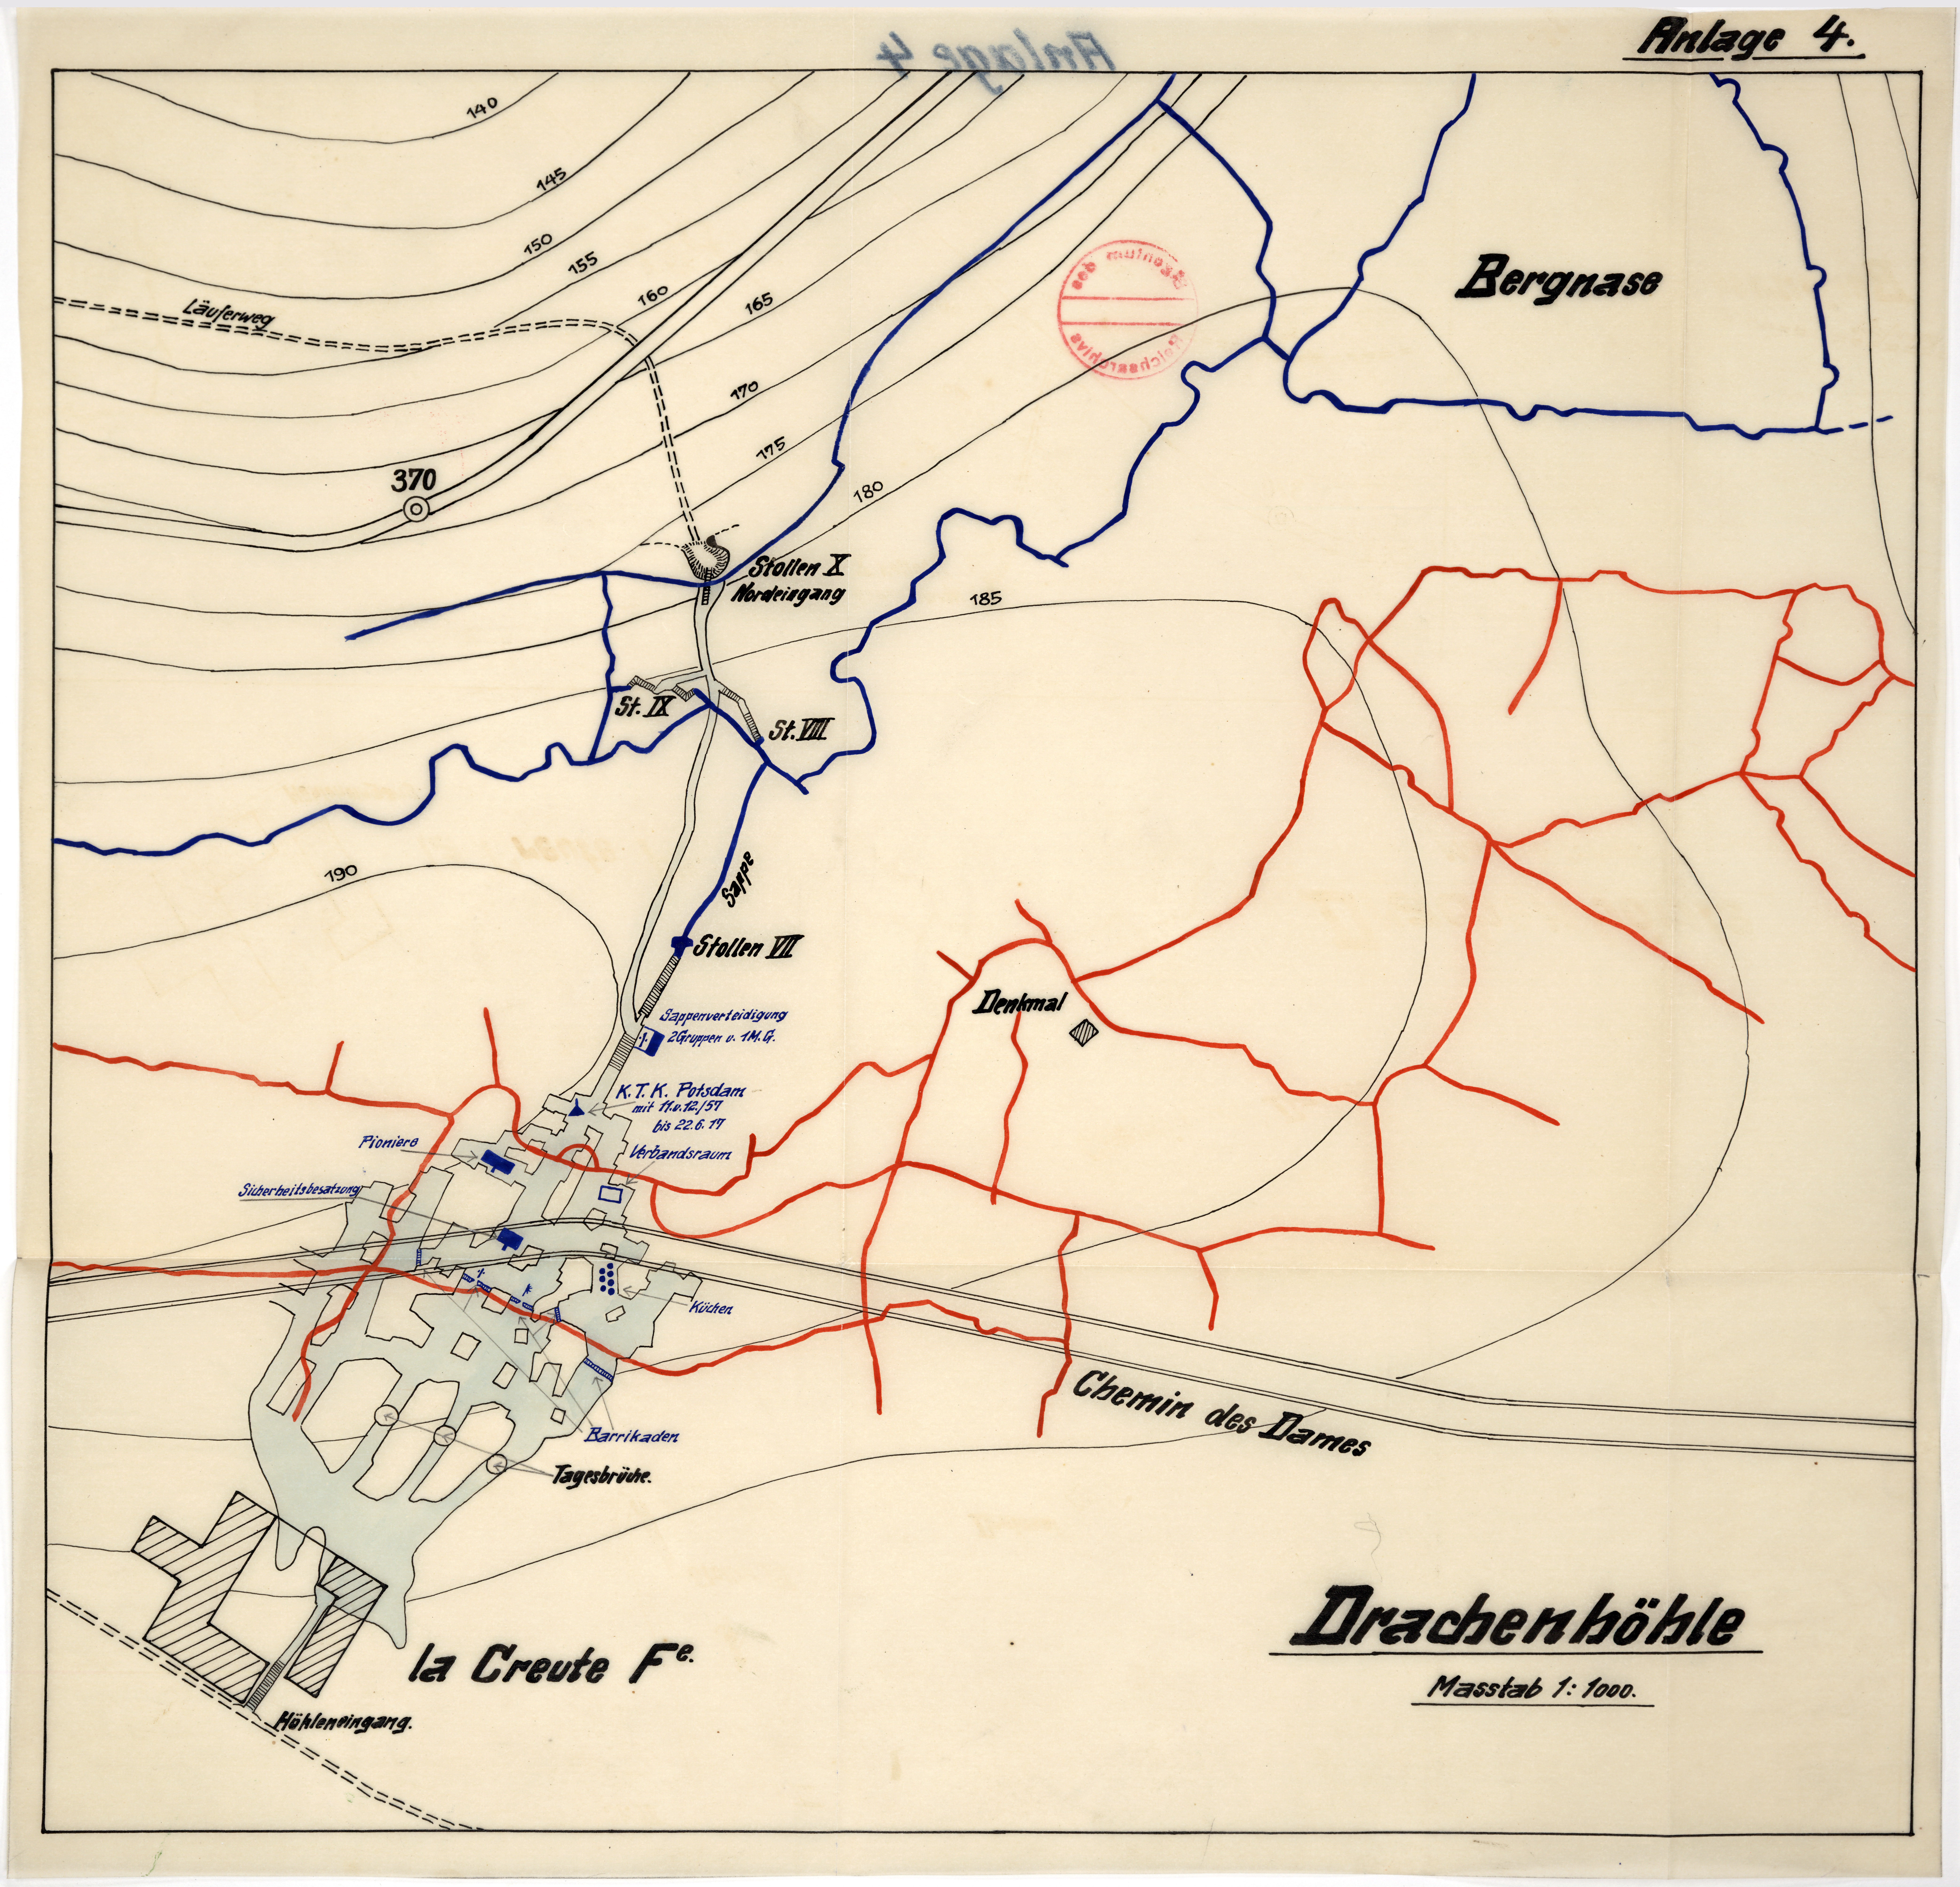 Plan de la Drachenhöhle, juin 1917 ©Archives allemandes